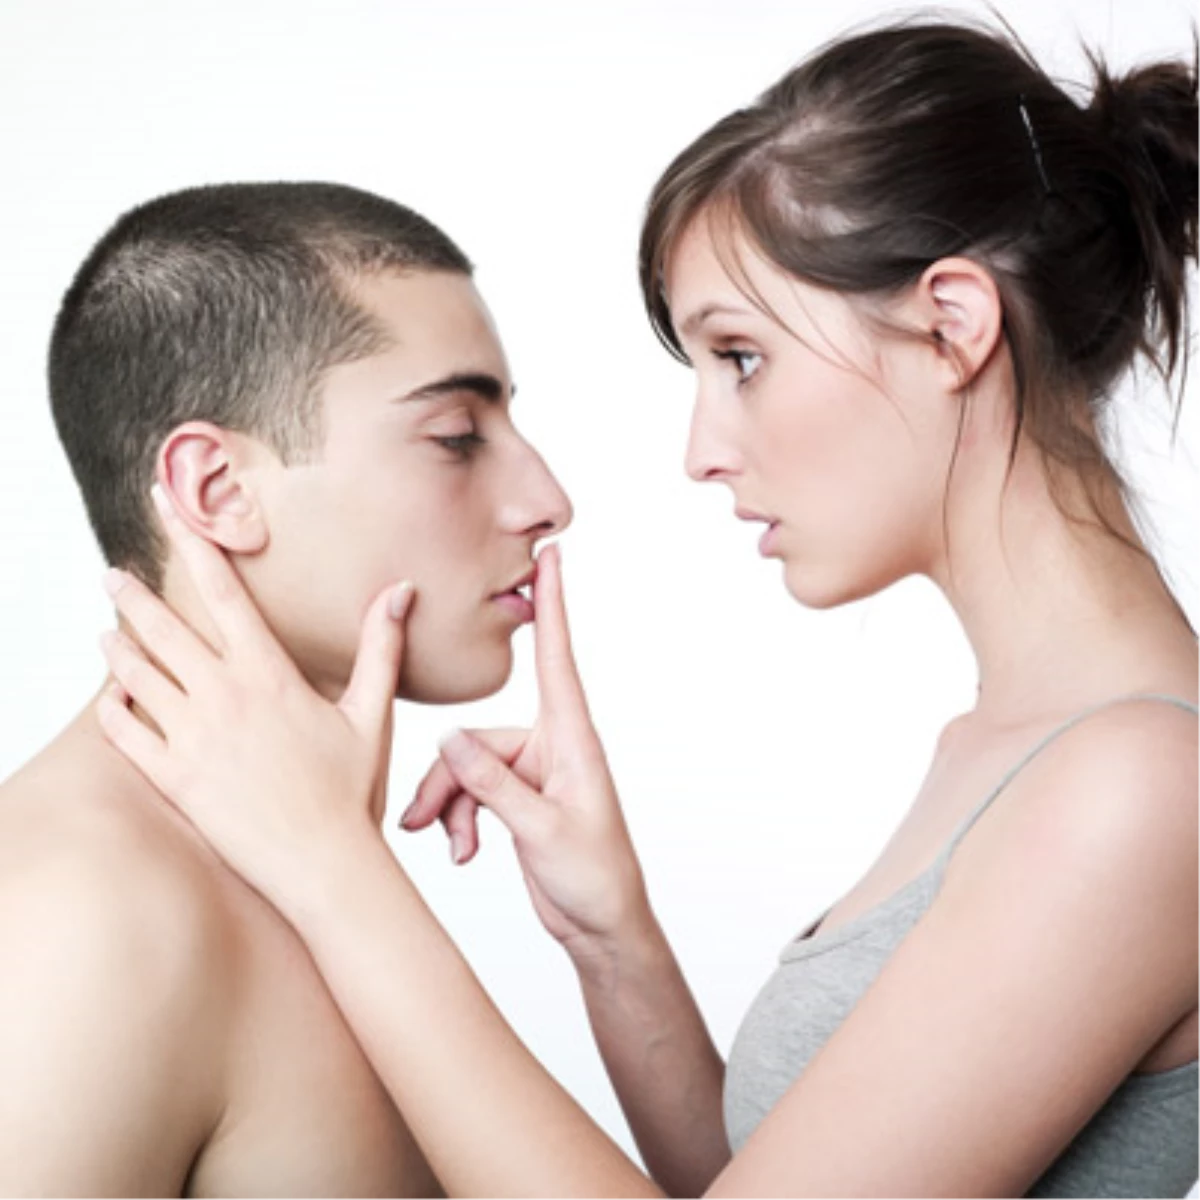 Разговор мужчин. Мужчина и женщина лицом к лицу. Интимное общение. Русское трио с разговором